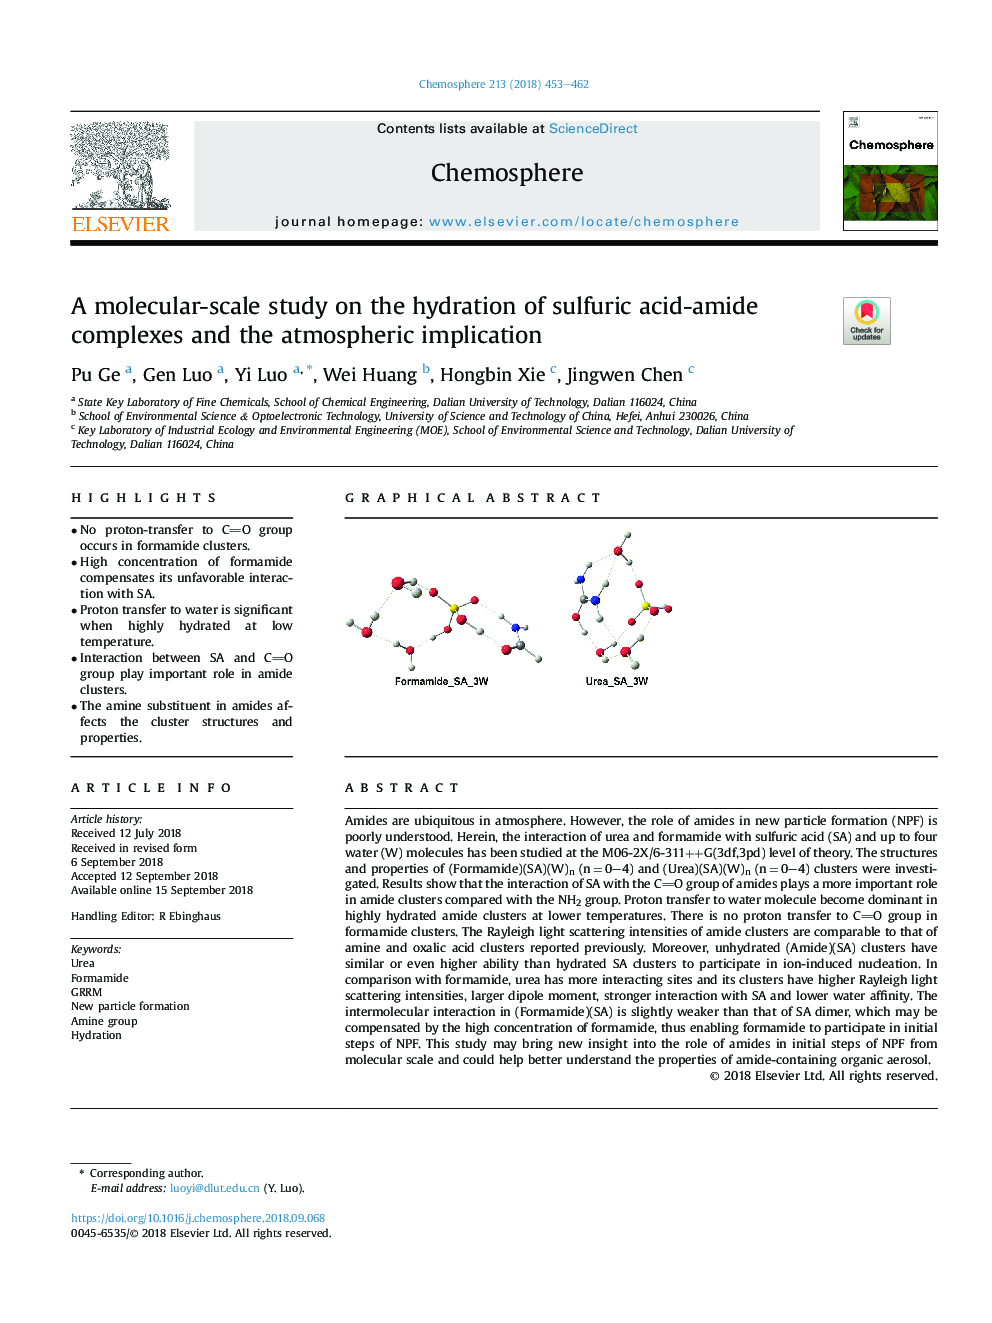 یک مطالعه در مقیاس مولکولی در مورد هیدراته شدن مجتمع اسید آمید سولفوریک و پیامدهای جوی